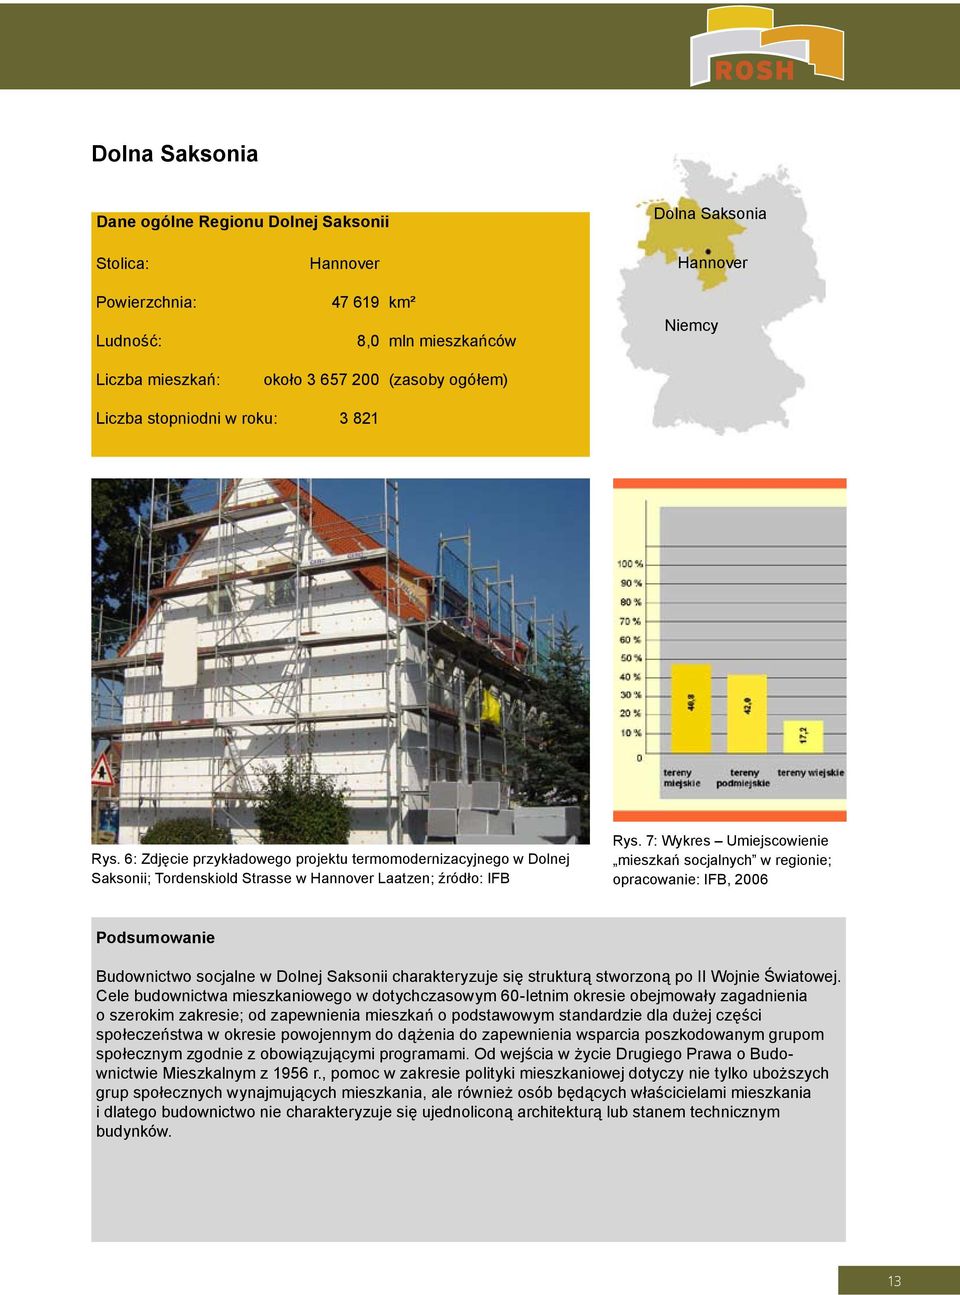 7: Wykres Umiejscowienie mieszkań socjalnych w regionie; opracowanie: IFB, 2006 Podsumowanie Budownictwo socjalne w Dolnej Saksonii charakteryzuje się strukturą stworzoną po II Wojnie Światowej.